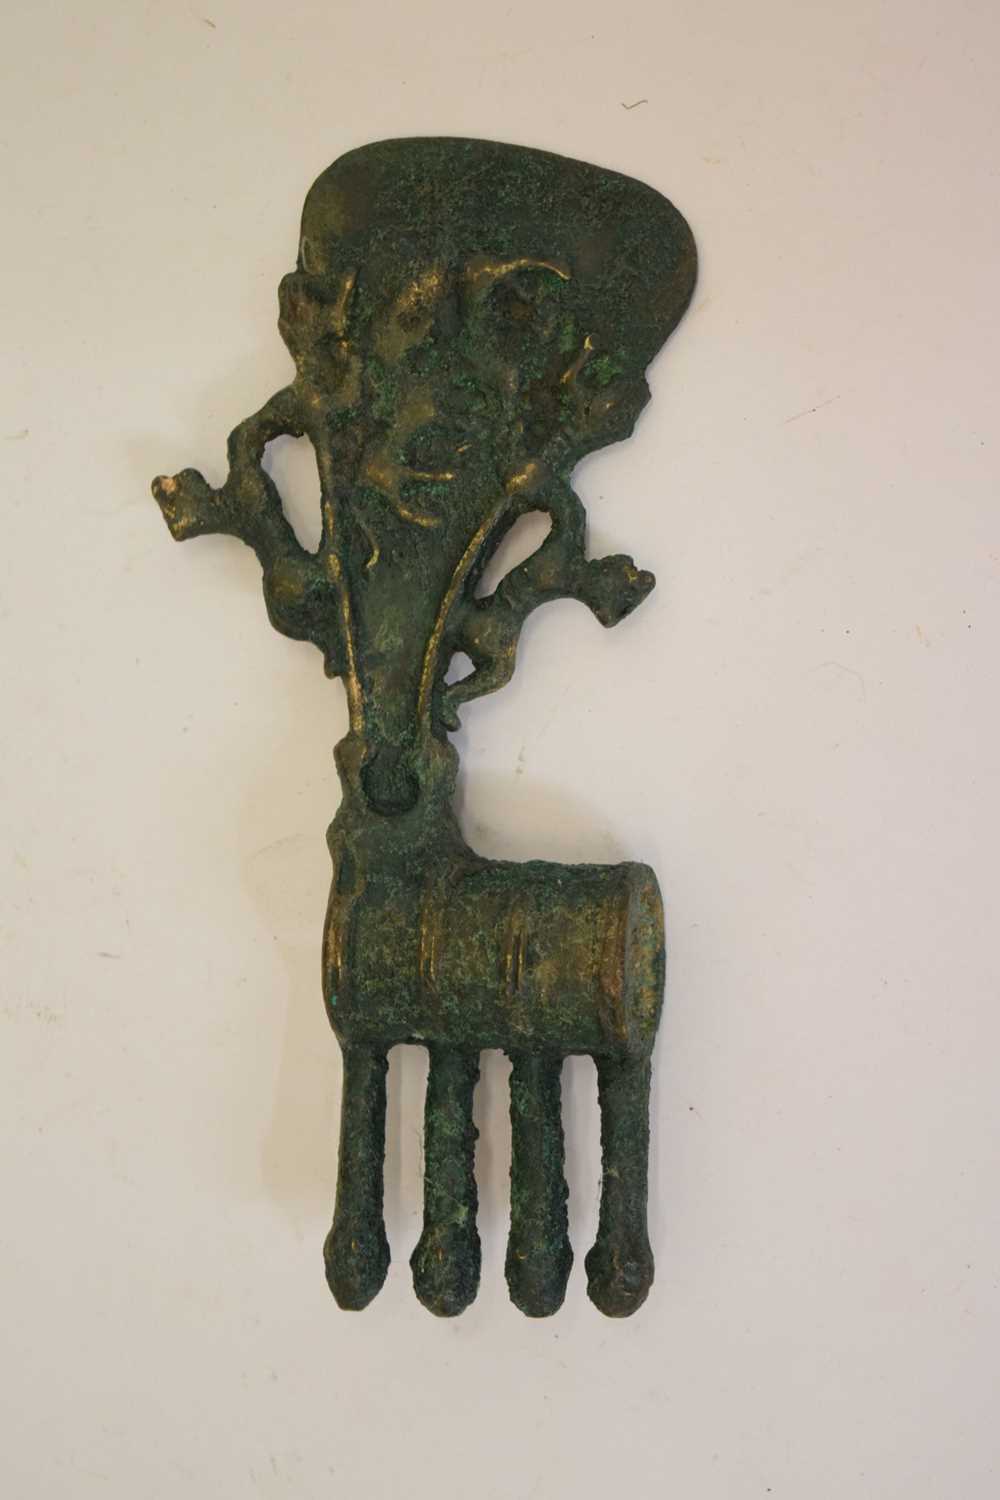 Antique type bronze axe head - Image 6 of 7